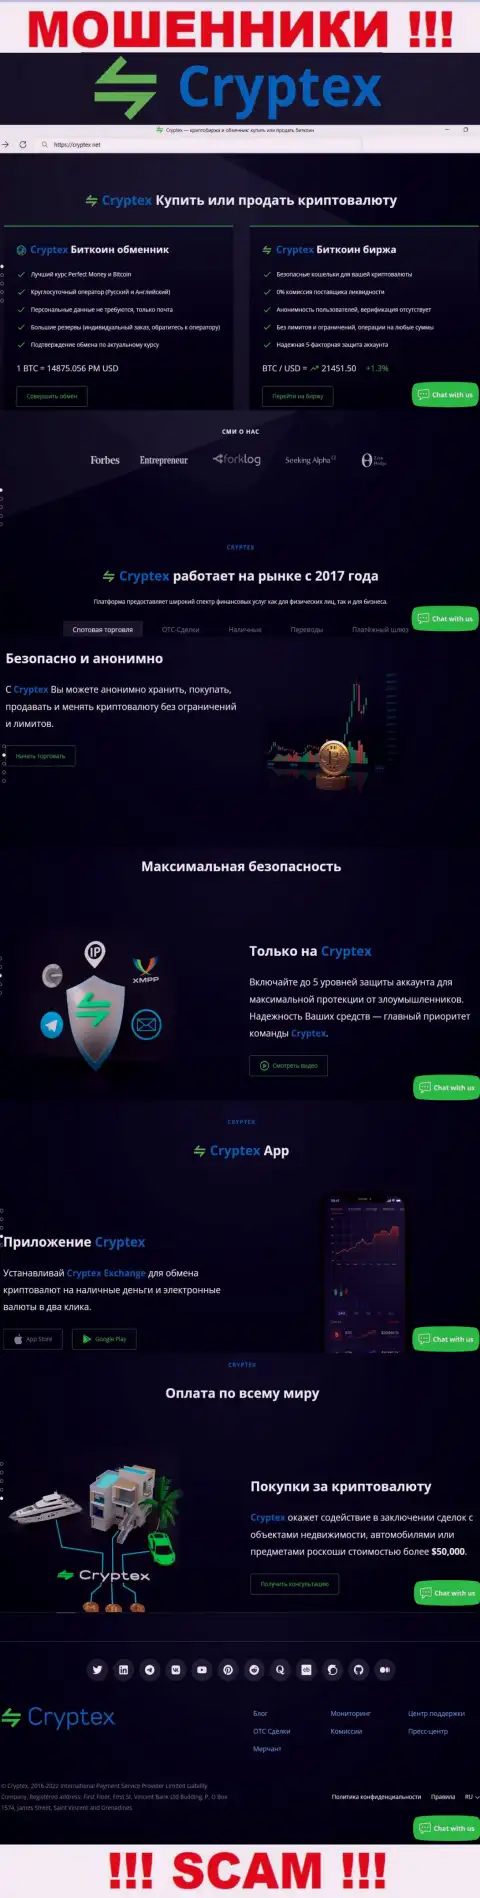 Скрин официального веб-сервиса мошеннической организации Cryptex Net